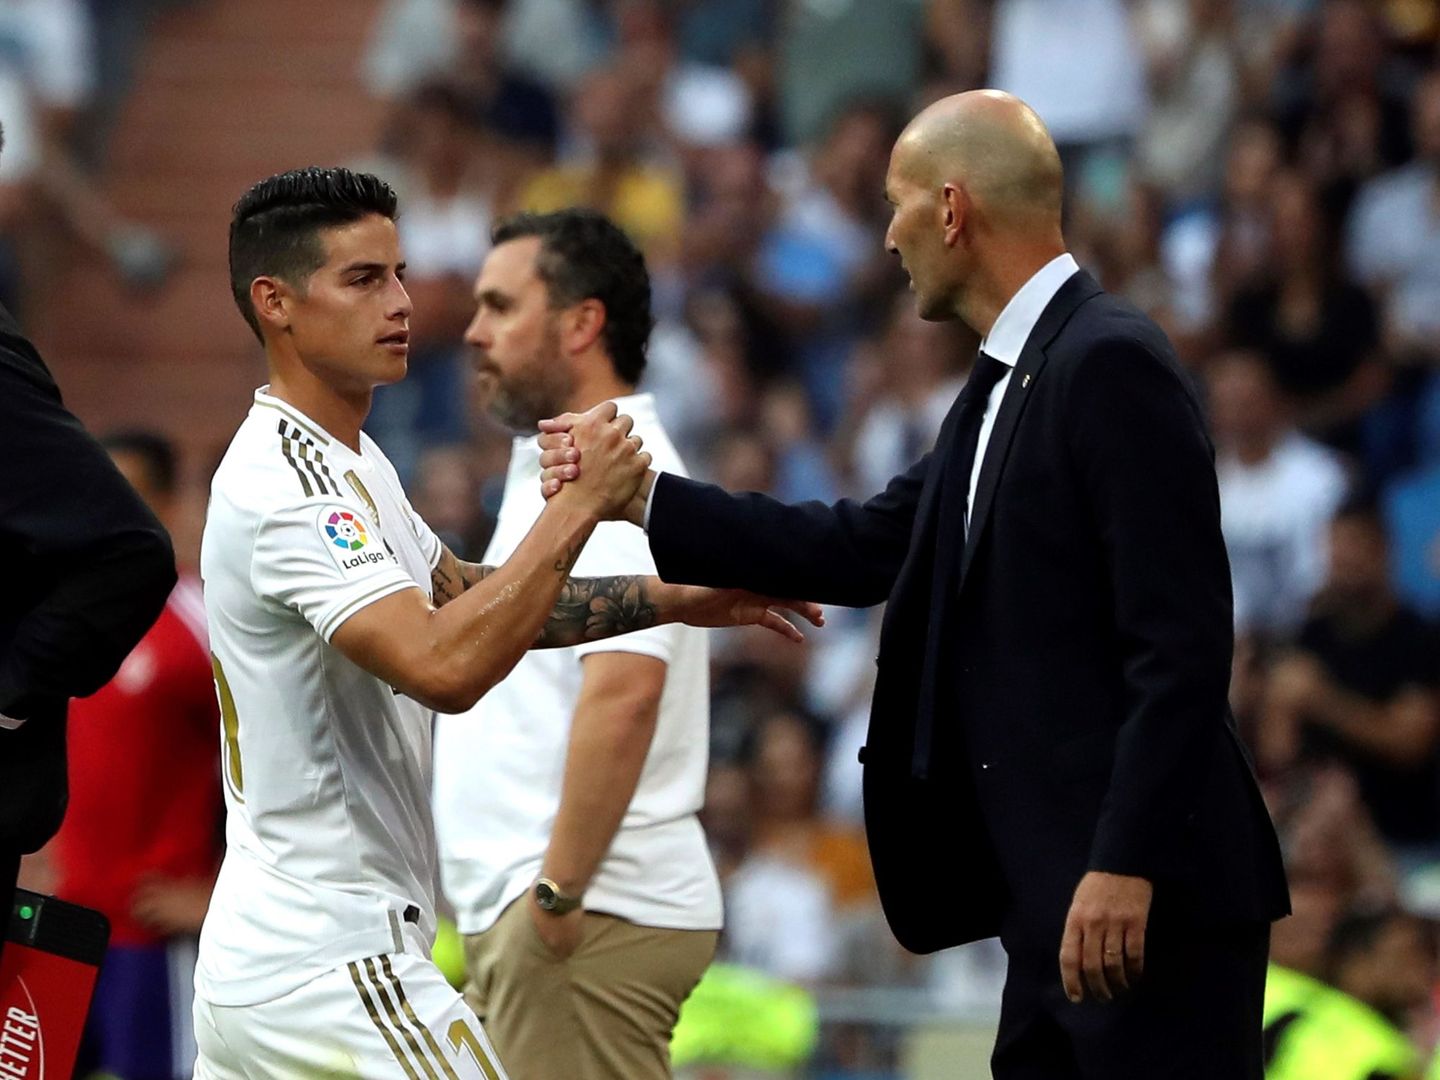 James y Zidane chocan sus manos en el partido contra el Valladolid. (Efe)